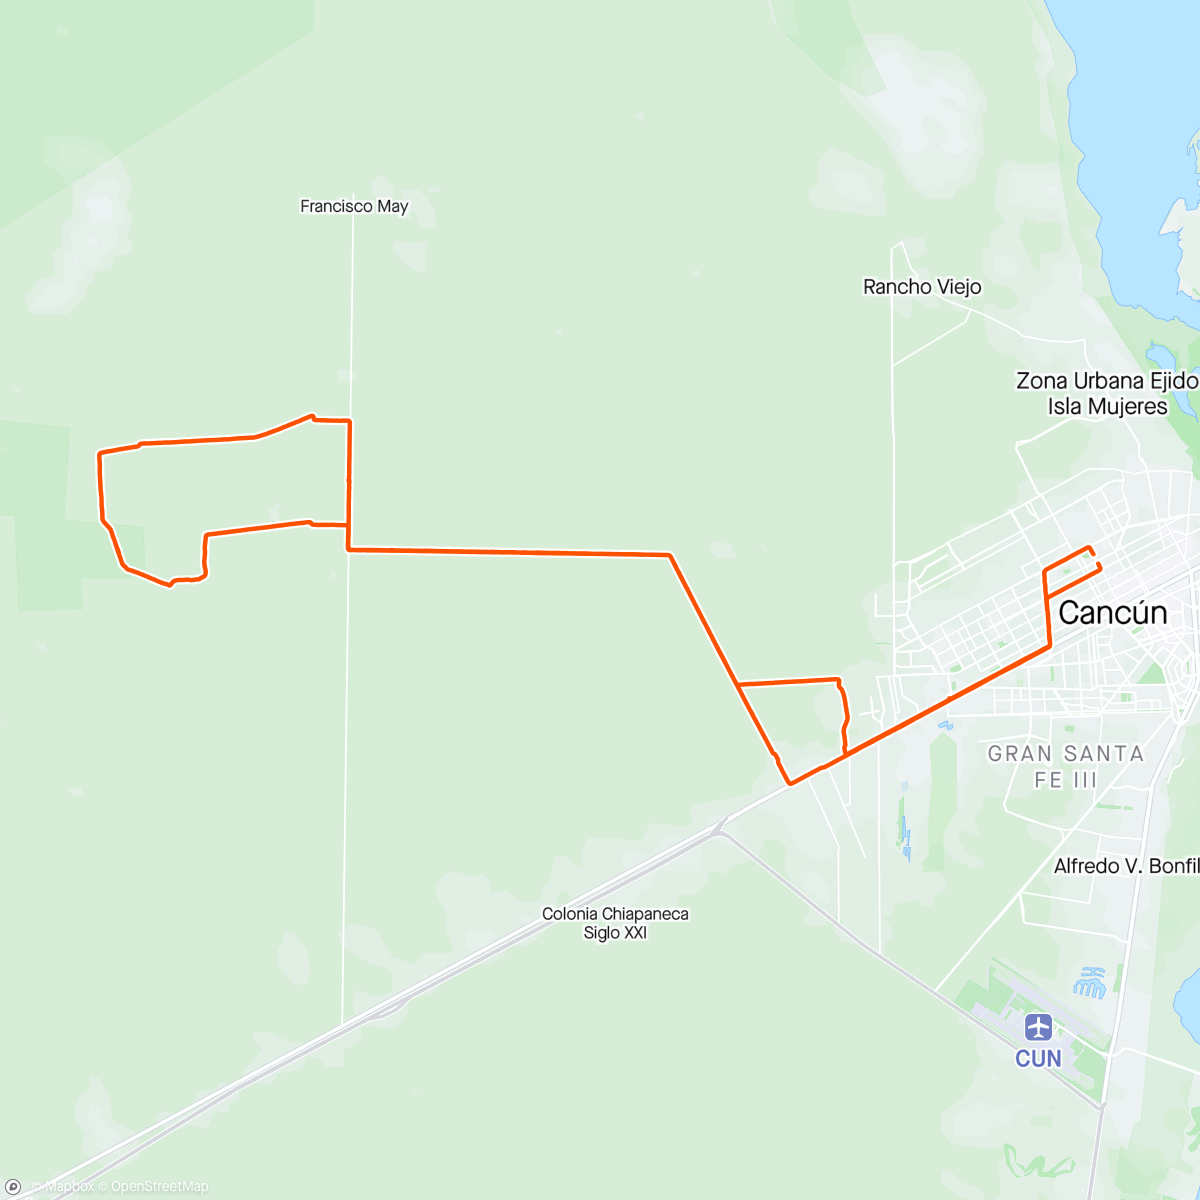 「Vuelta en bicicleta de montaña matutina」活動的地圖